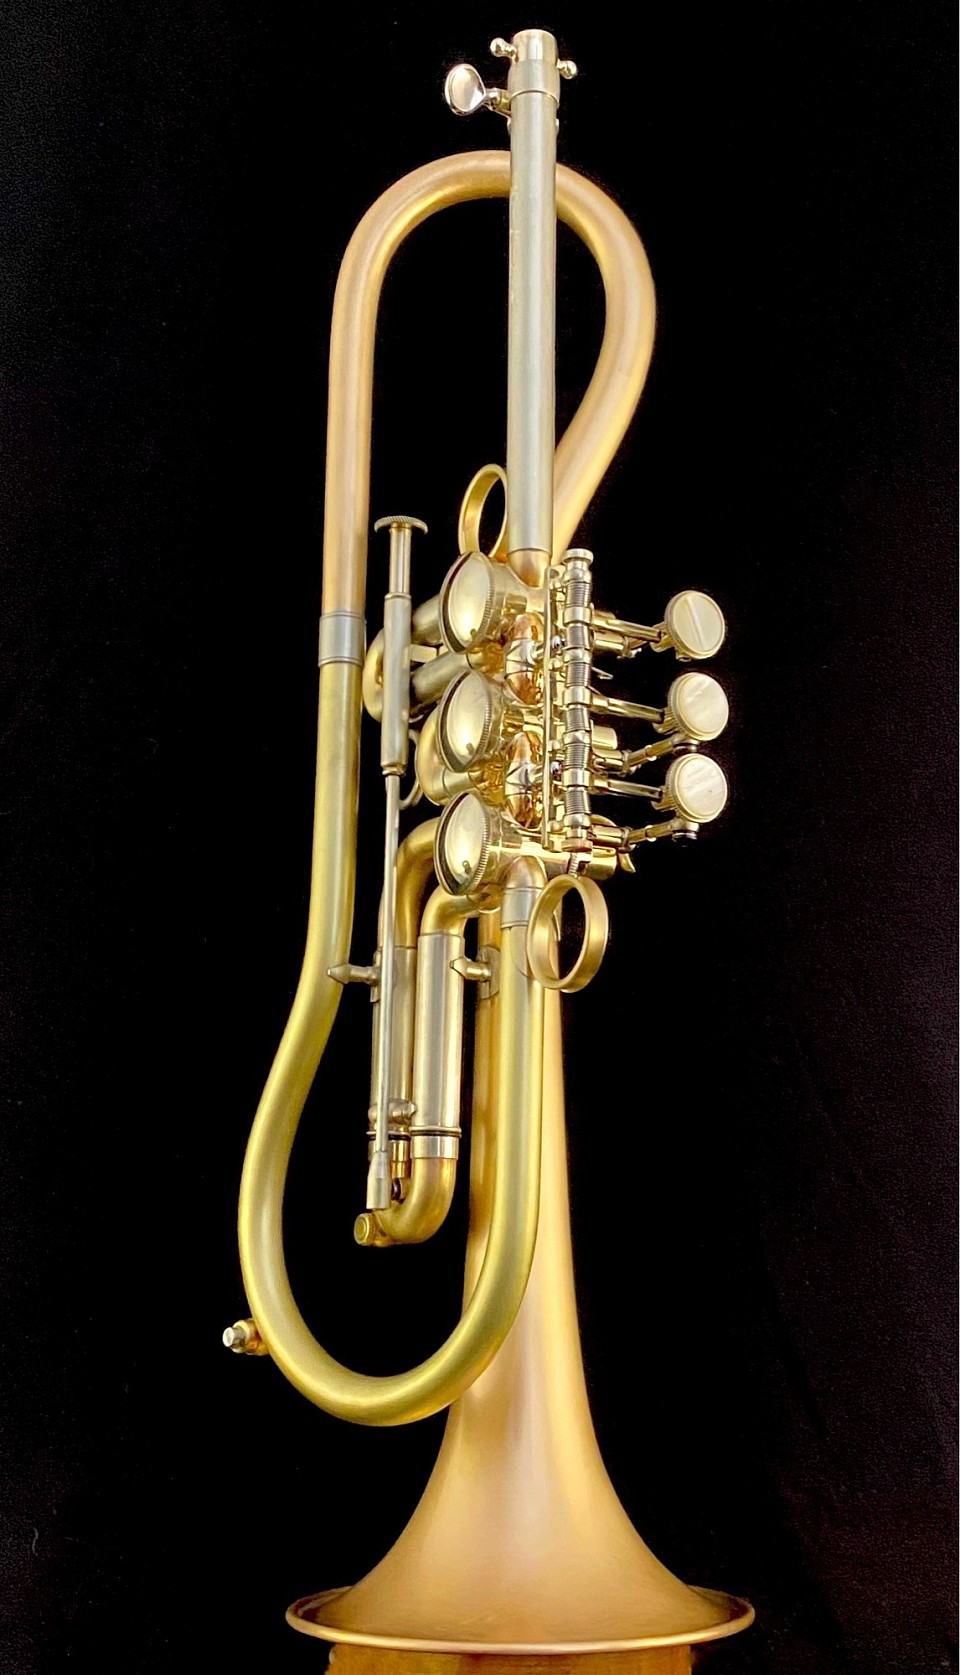 MG Trumpets - Surakav Hybrid